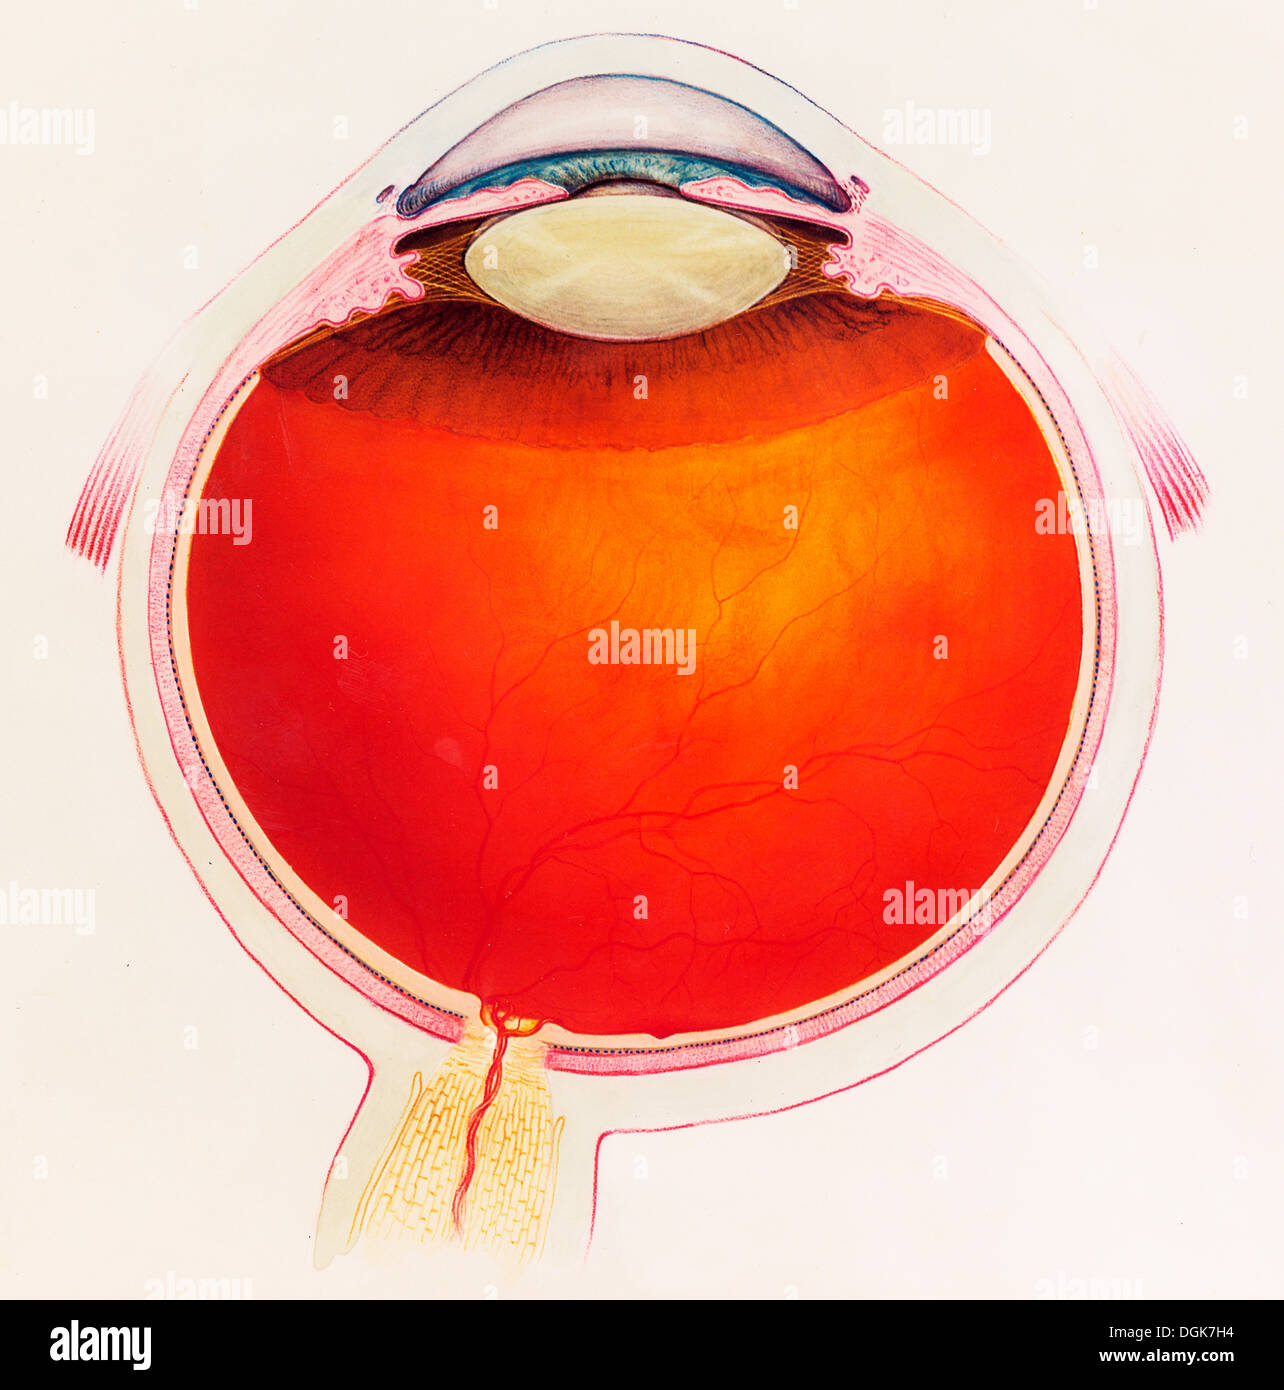 Sezione trasversale schematica dell'occhio umano Foto Stock